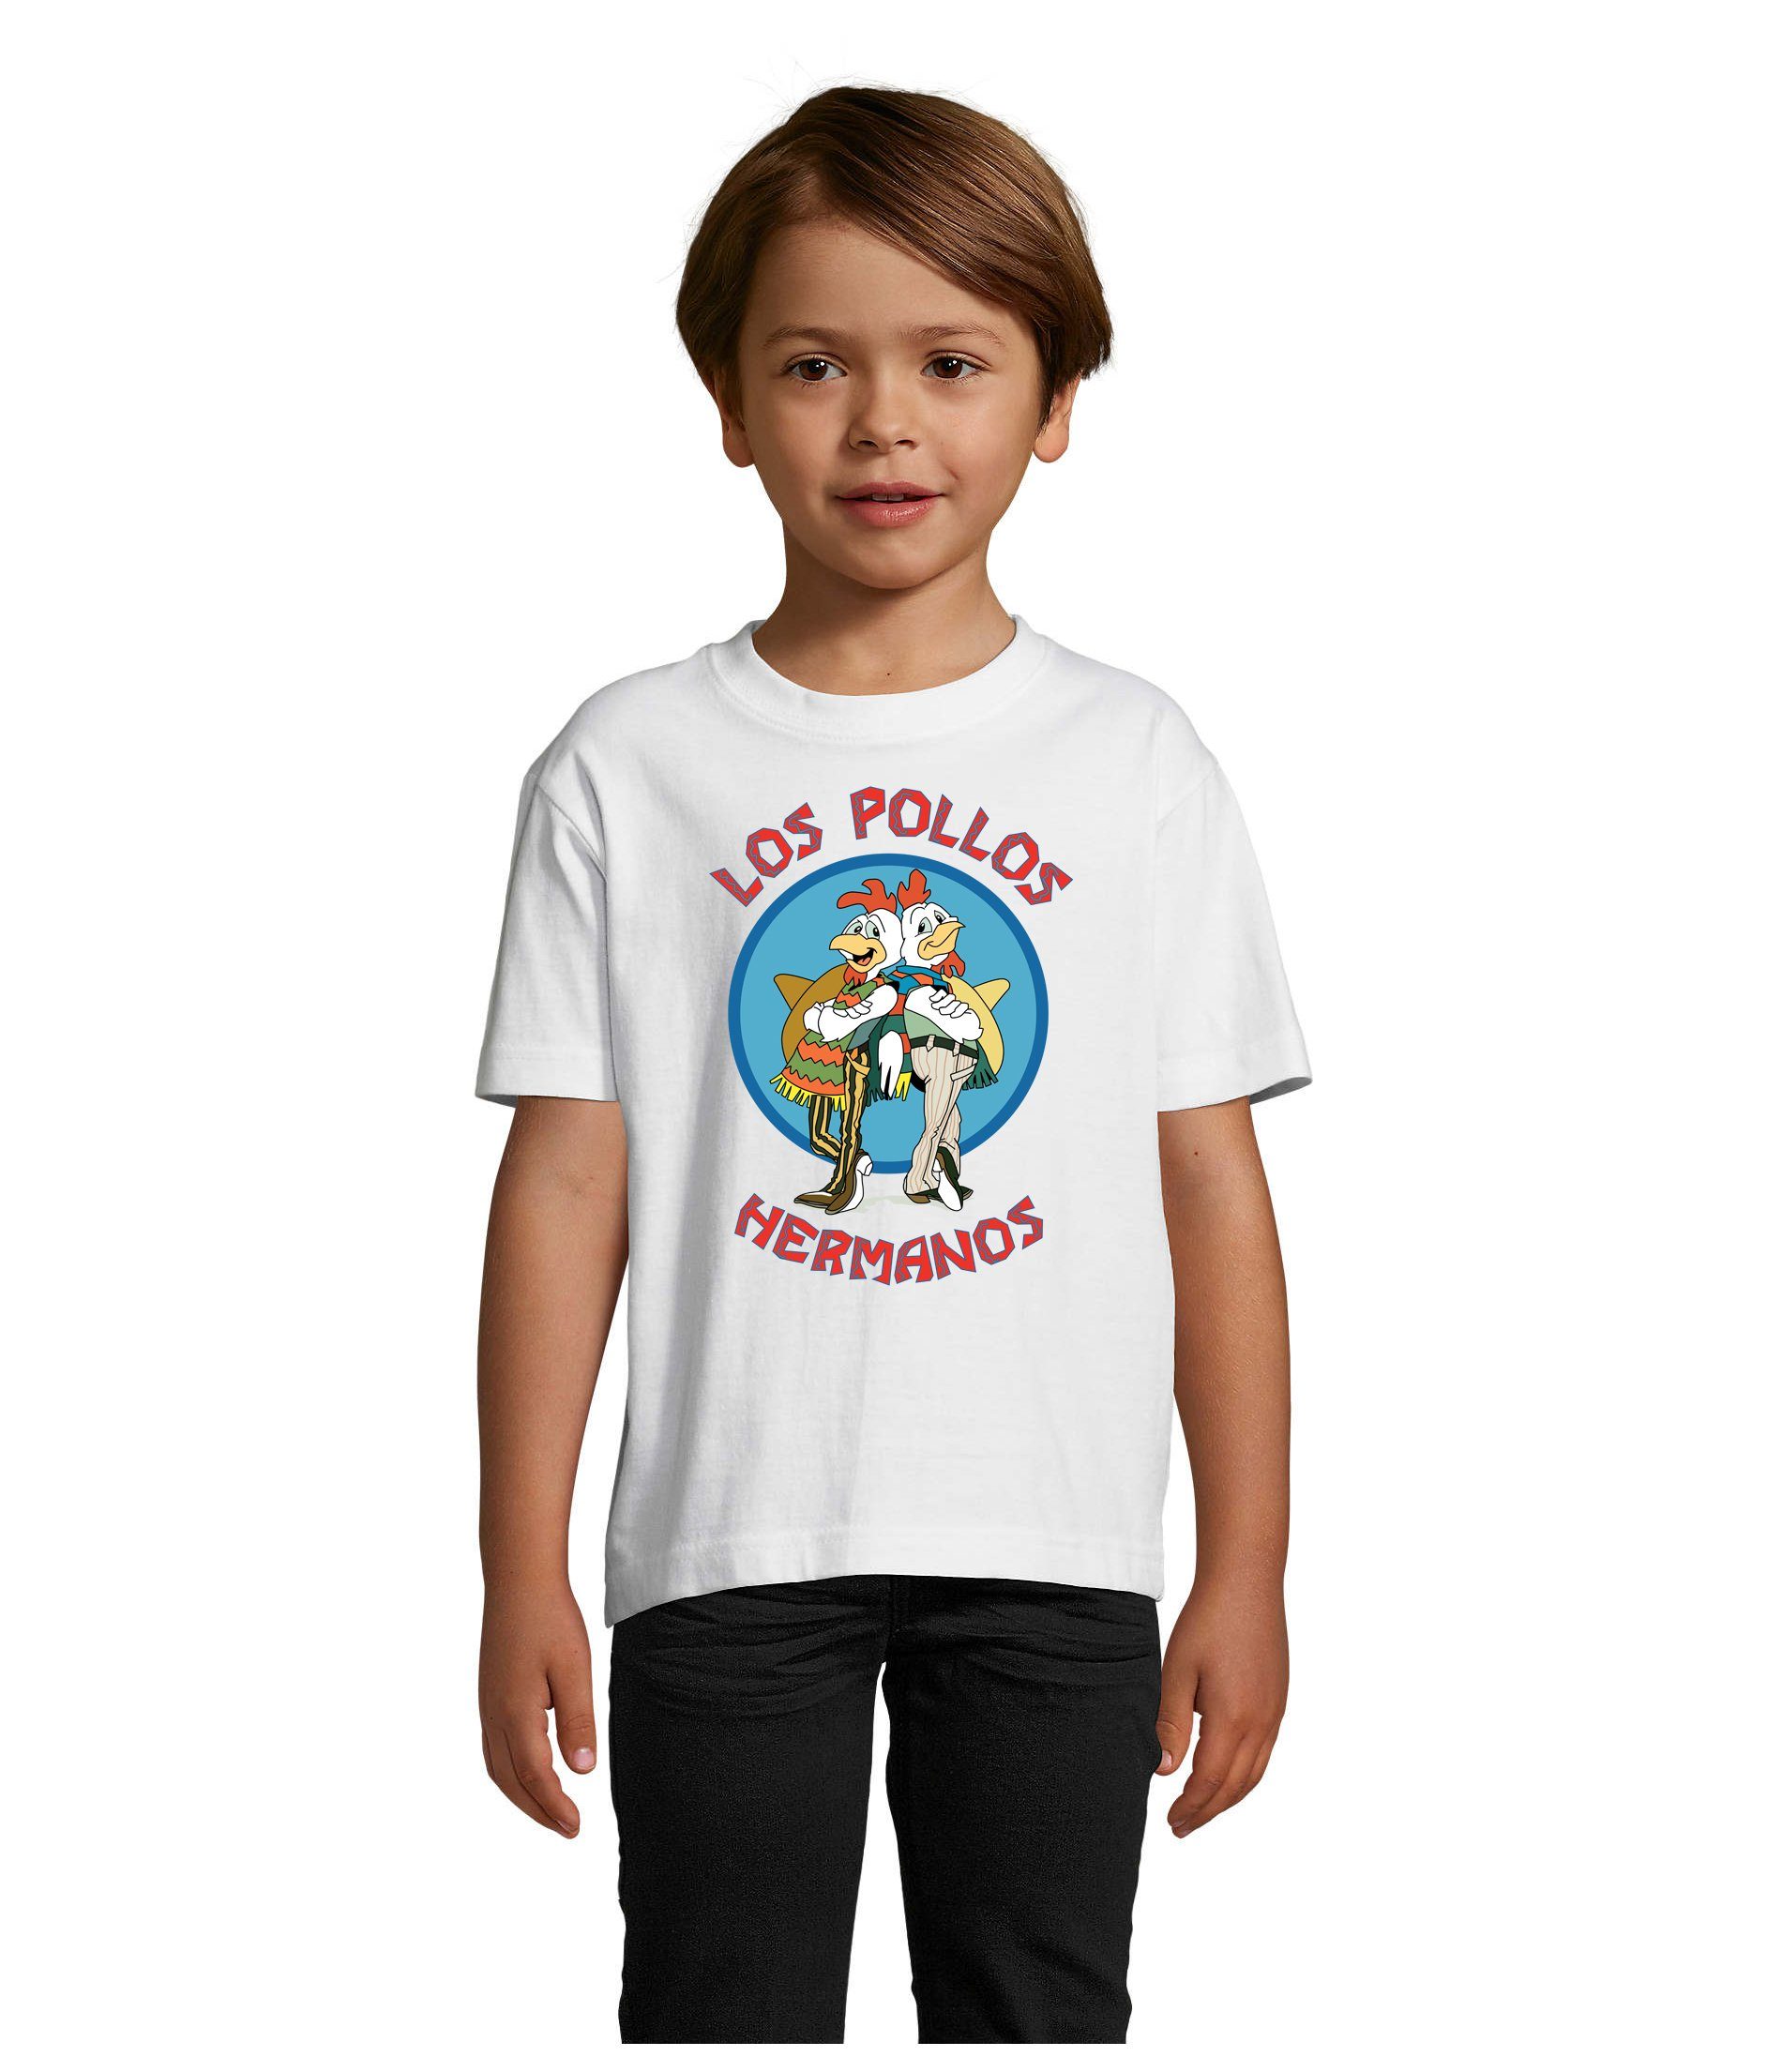 Blondie & Brownie T-Shirt Kinder Jungen & Mädchen Hermanos Hühner Los Pollos in vielen Farben Weiß